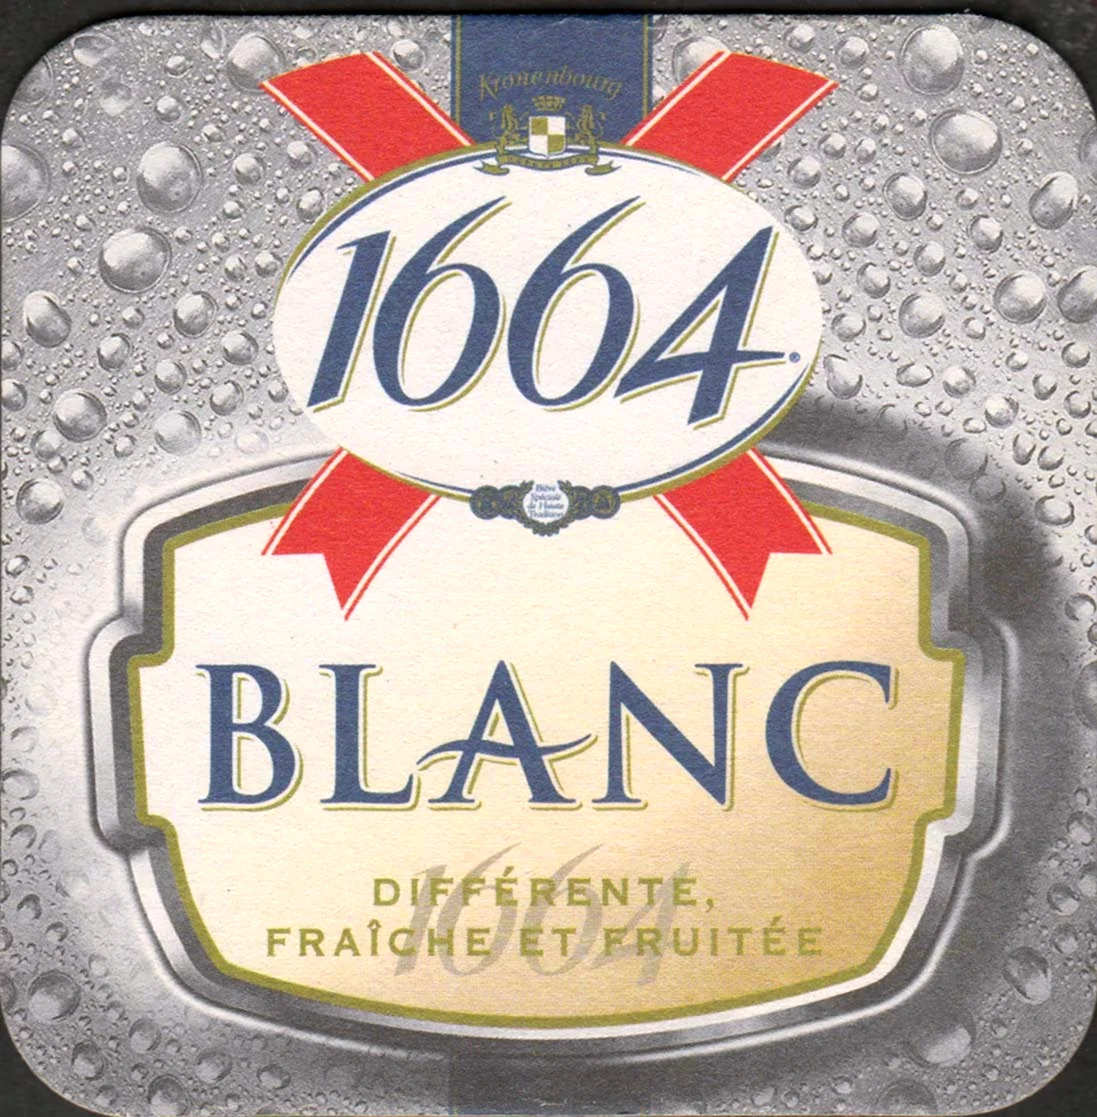 Кроненберг 1664 Blanc разливное